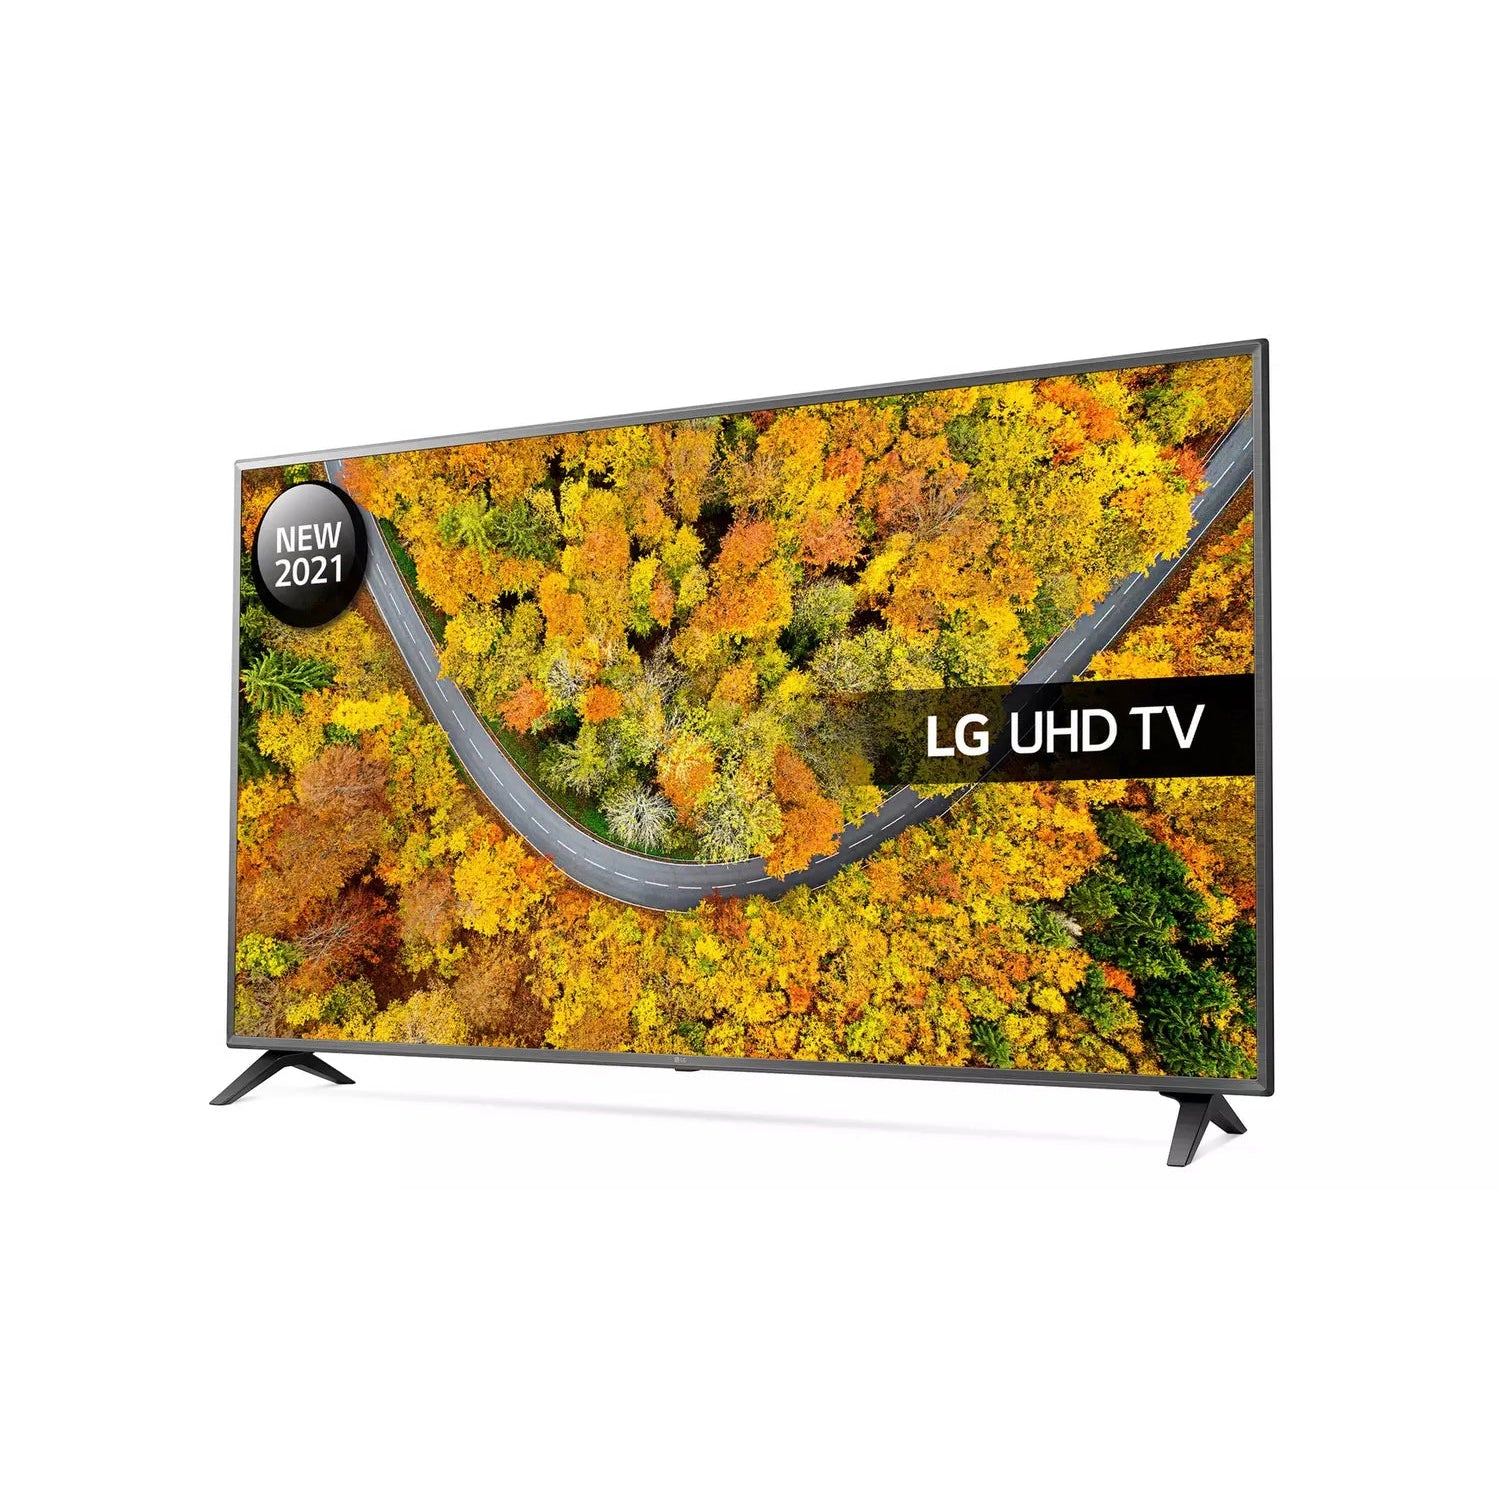 LG 43UP75006LF 43" Smart 4K Ultra HD HDR LED TV